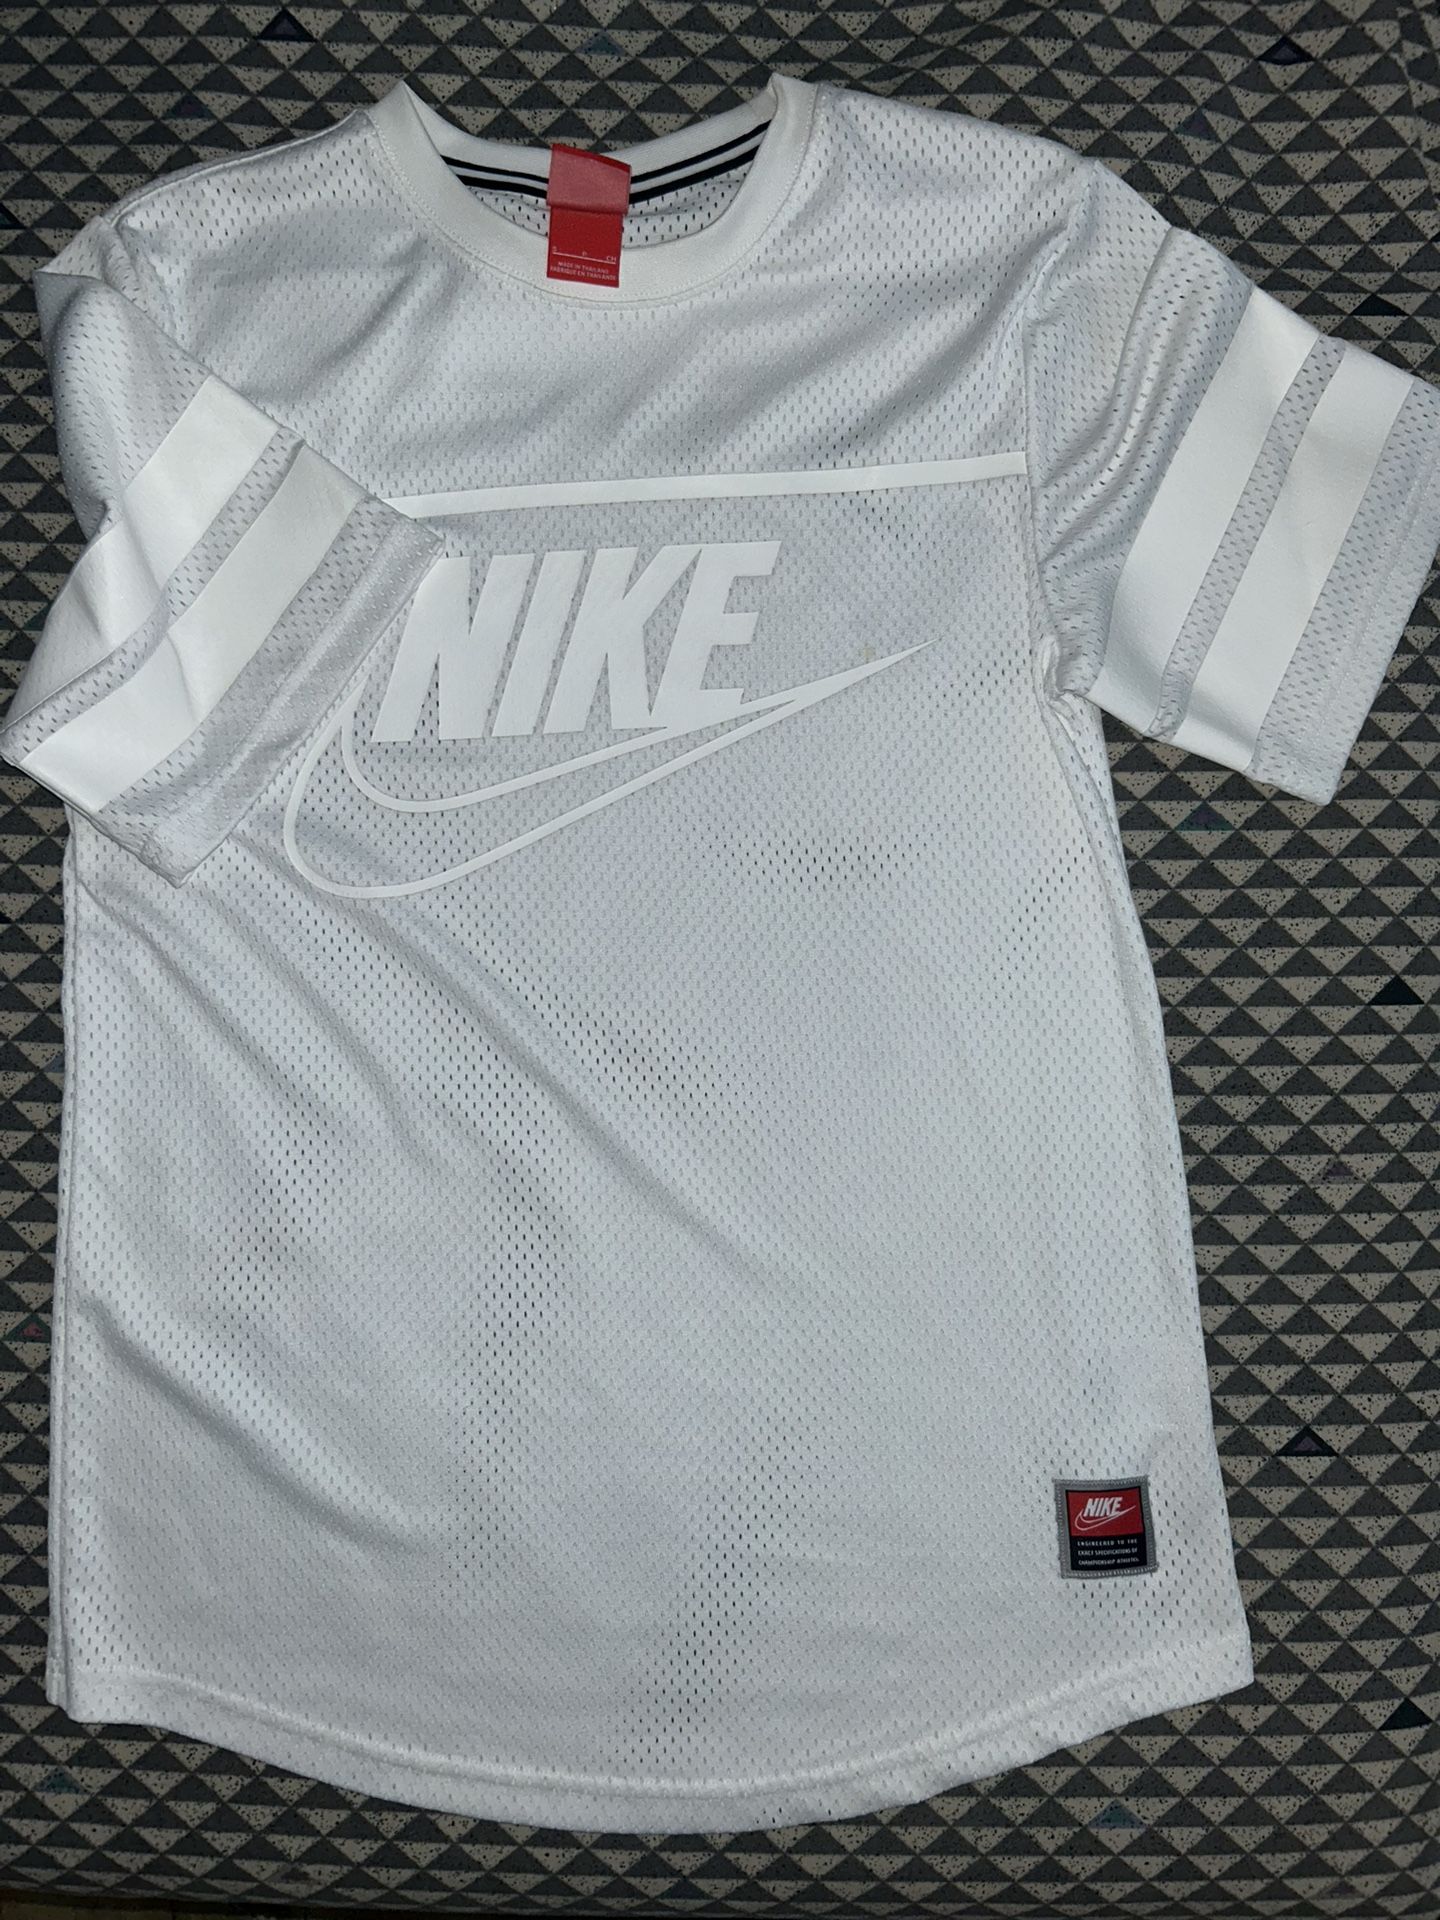 Vintage Nike Jersey Shirt 